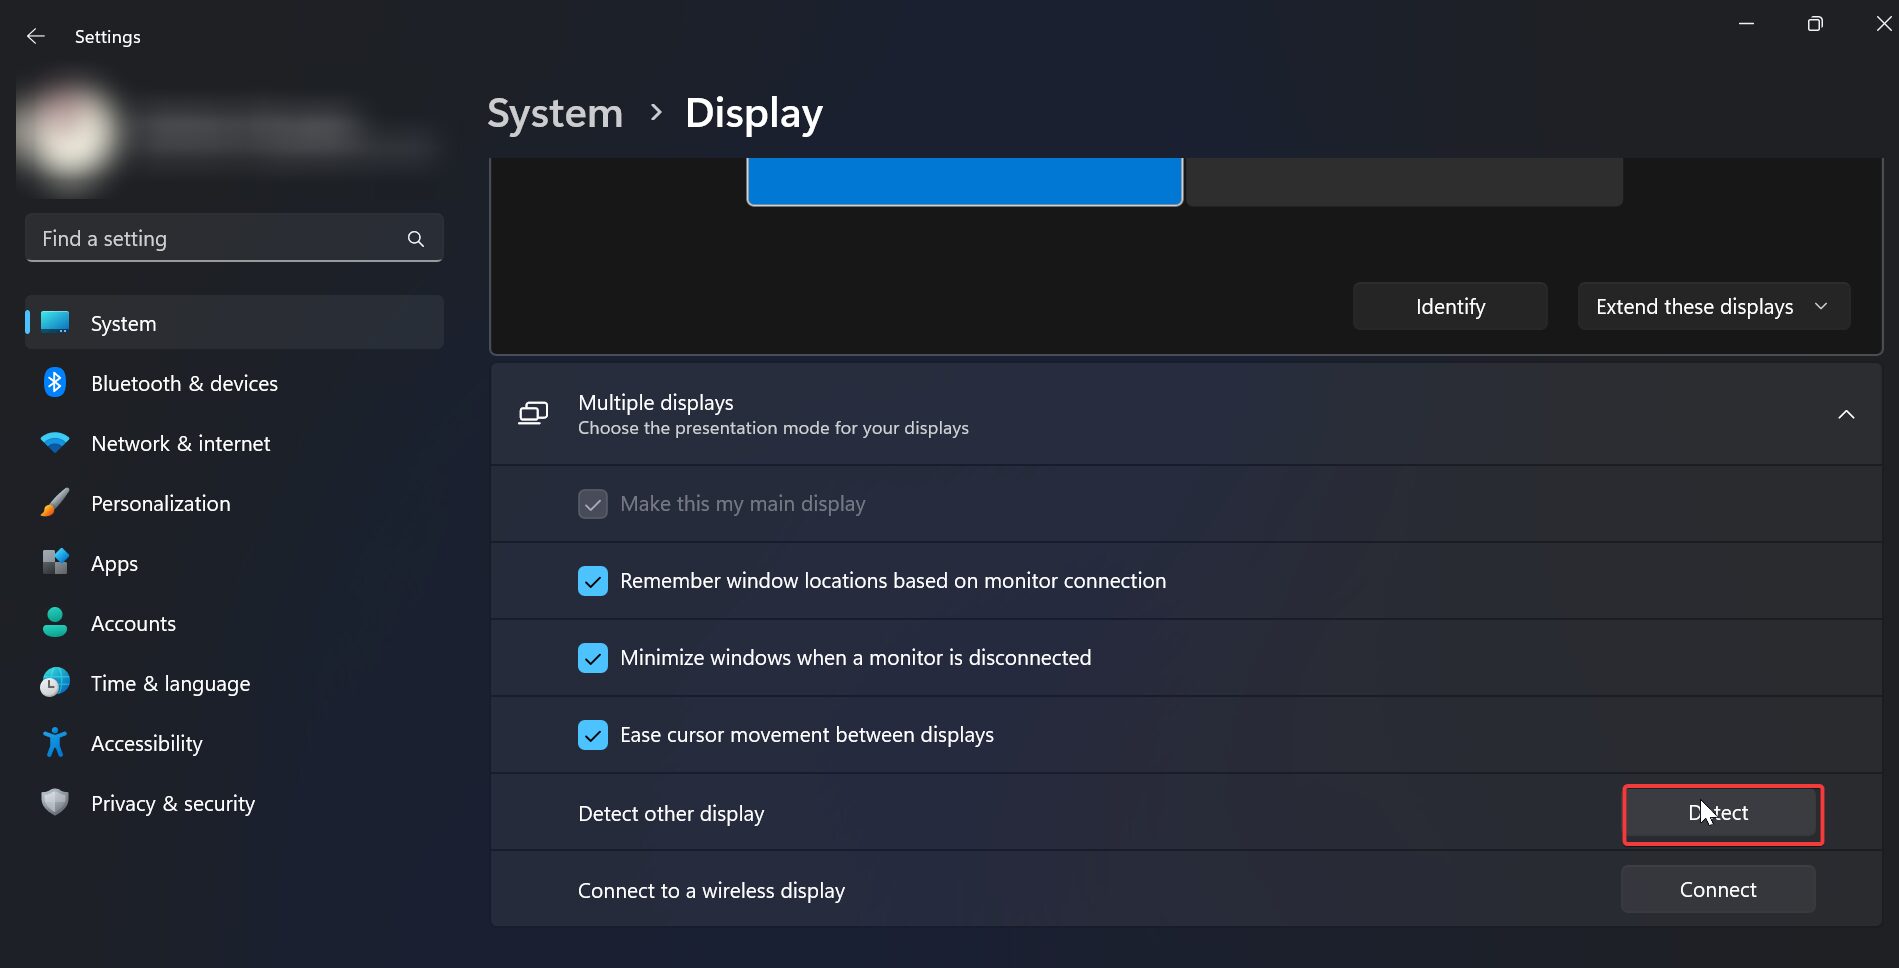 Adjust display settings